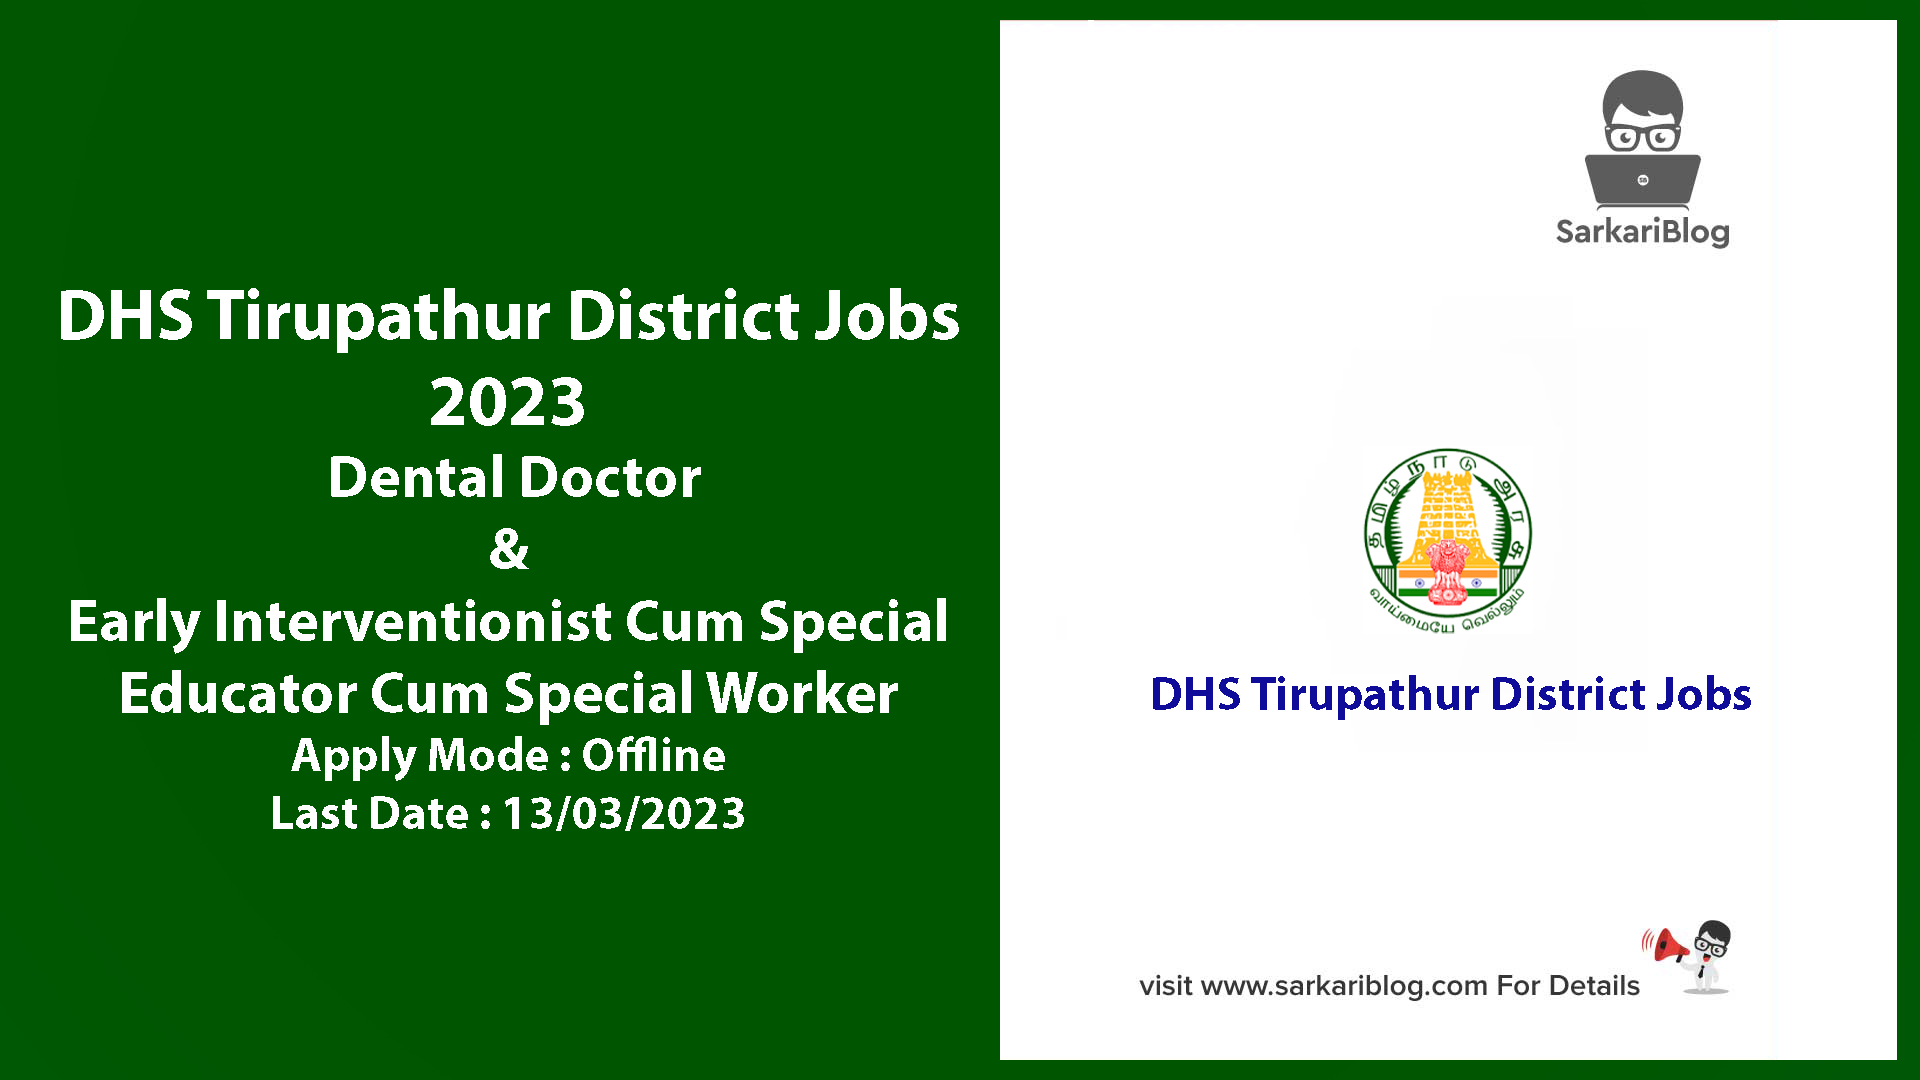 DHS Tirupathur District Jobs 2023